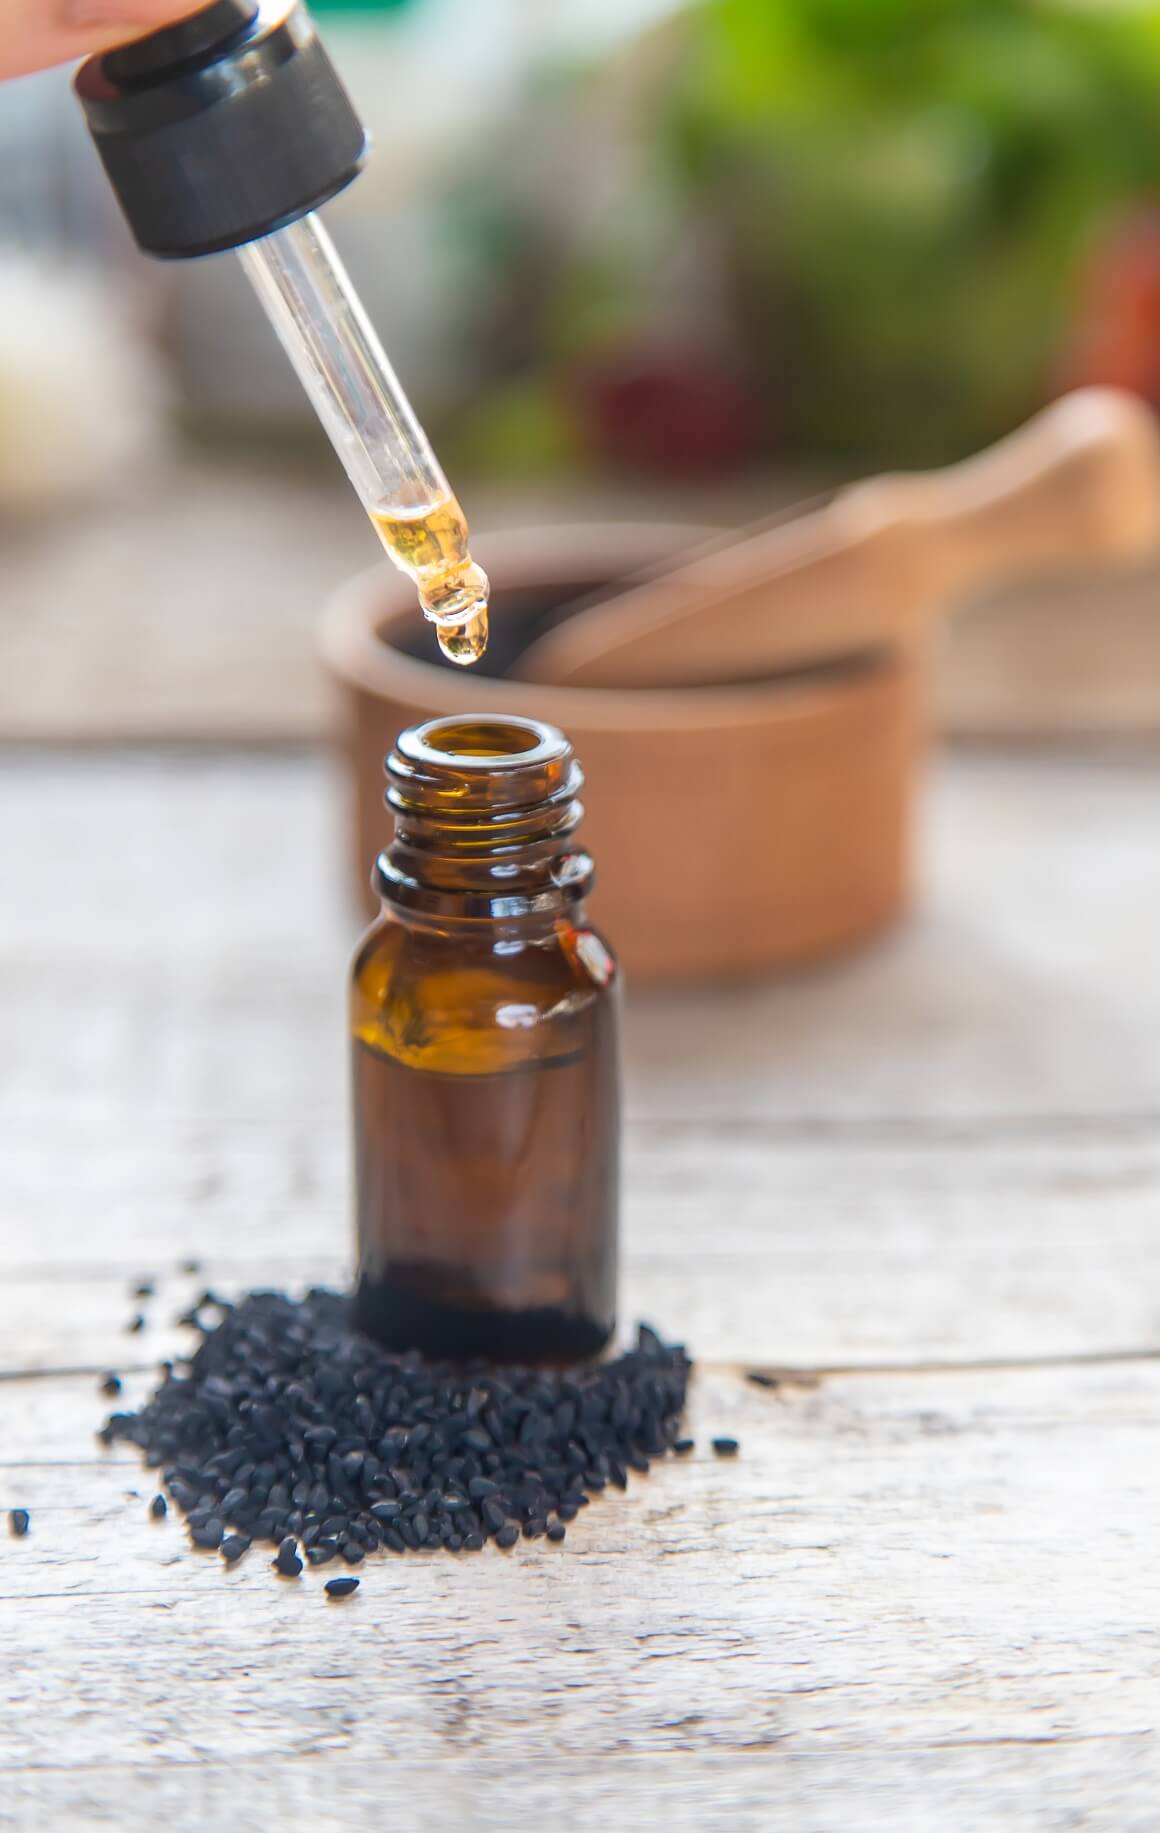 ulje crnog kima podiže oslabljeni imunitet i ublažava preburnu imunološku reakciju kod alergena